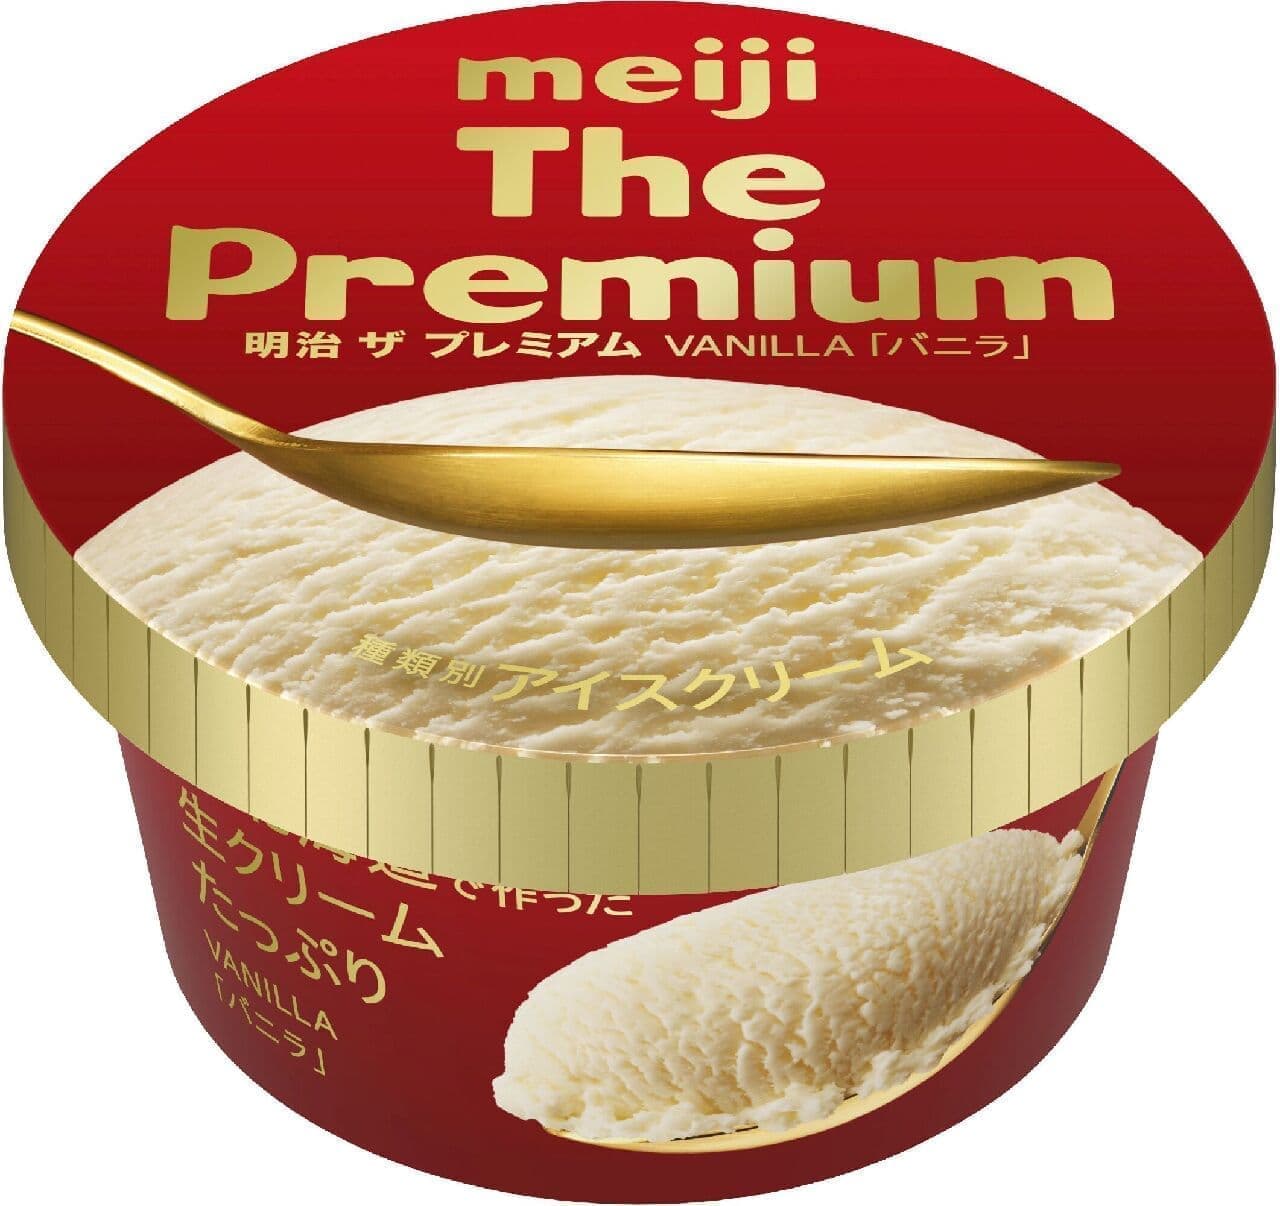 Meiji "Meiji The Premium Vanilla